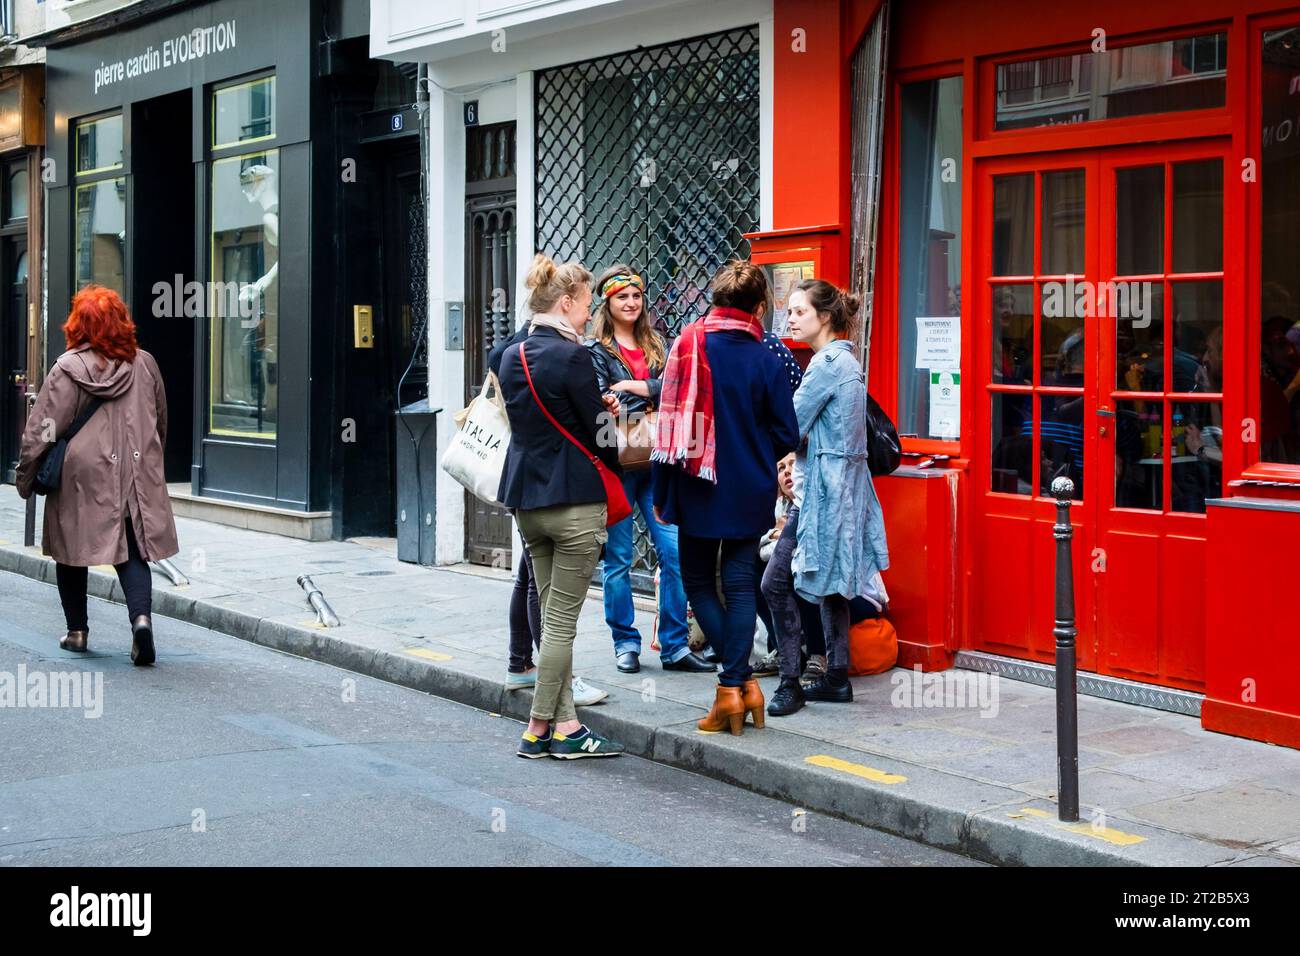 Un groupe de jeunes femmes adultes se rassemble dans une rue du quartier du Marais, Paris, France. Banque D'Images